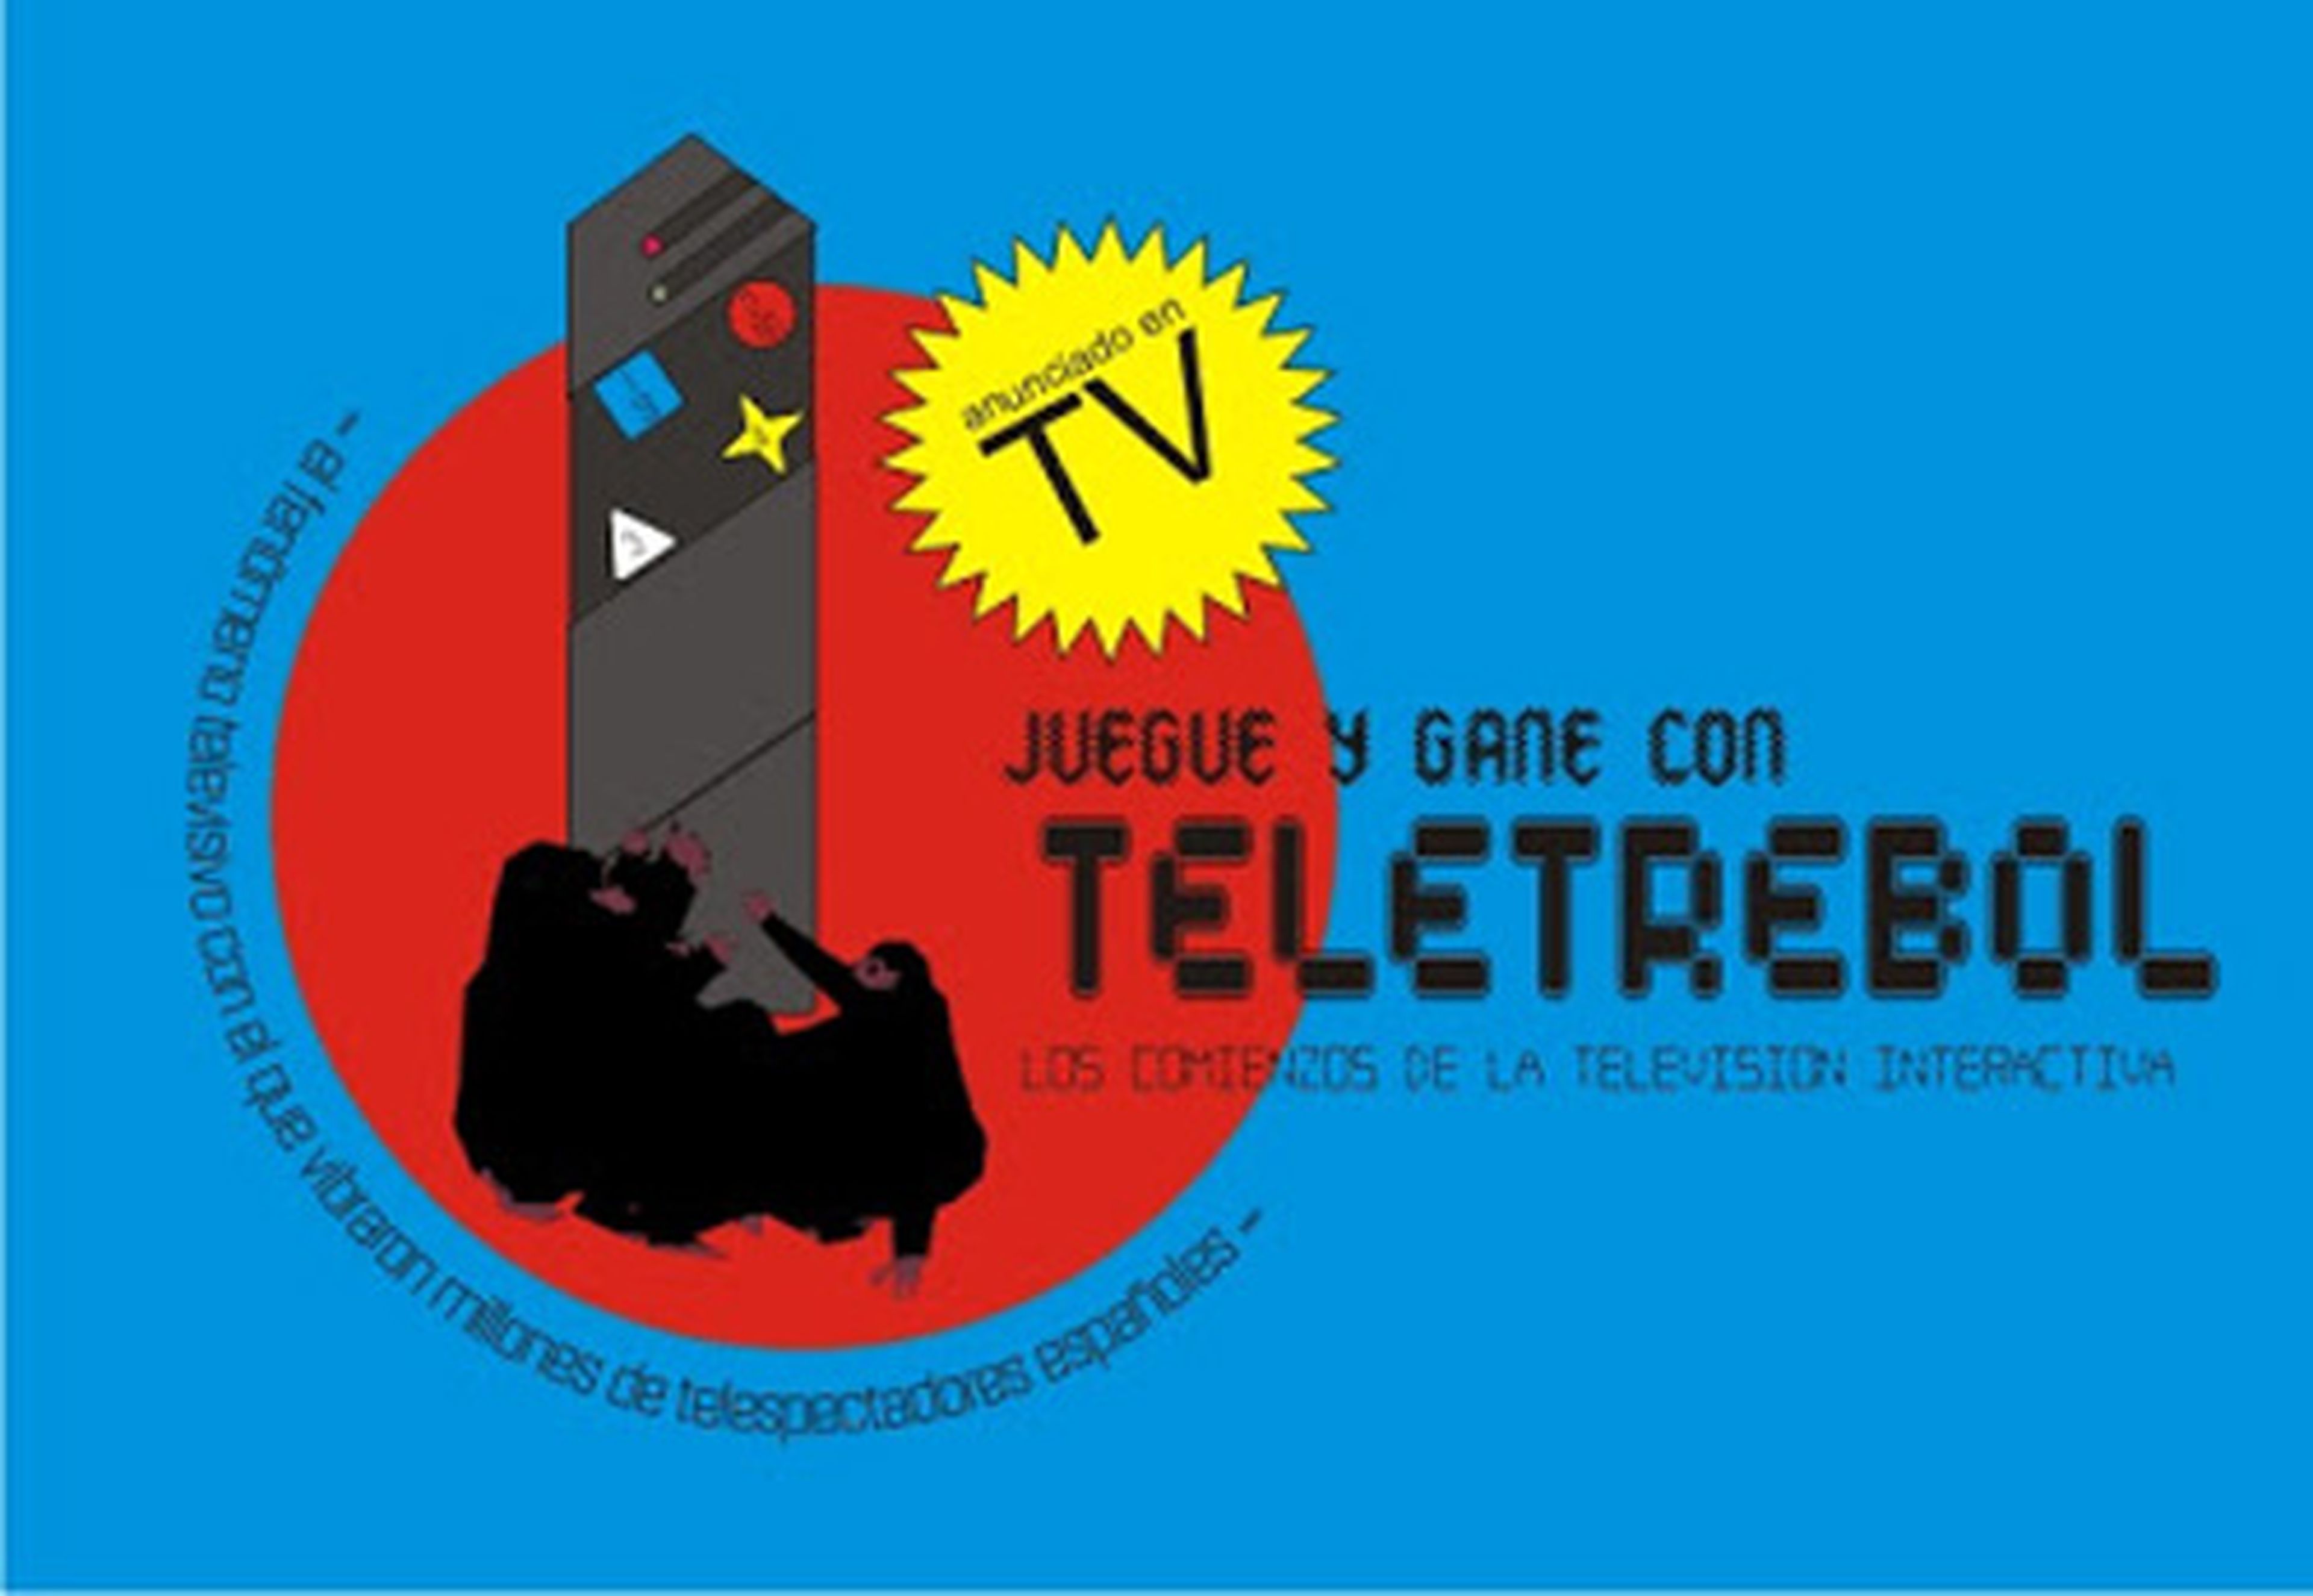 Teletrebol, el gadget de Tele5 con el que intentó emprender una TV interactiva